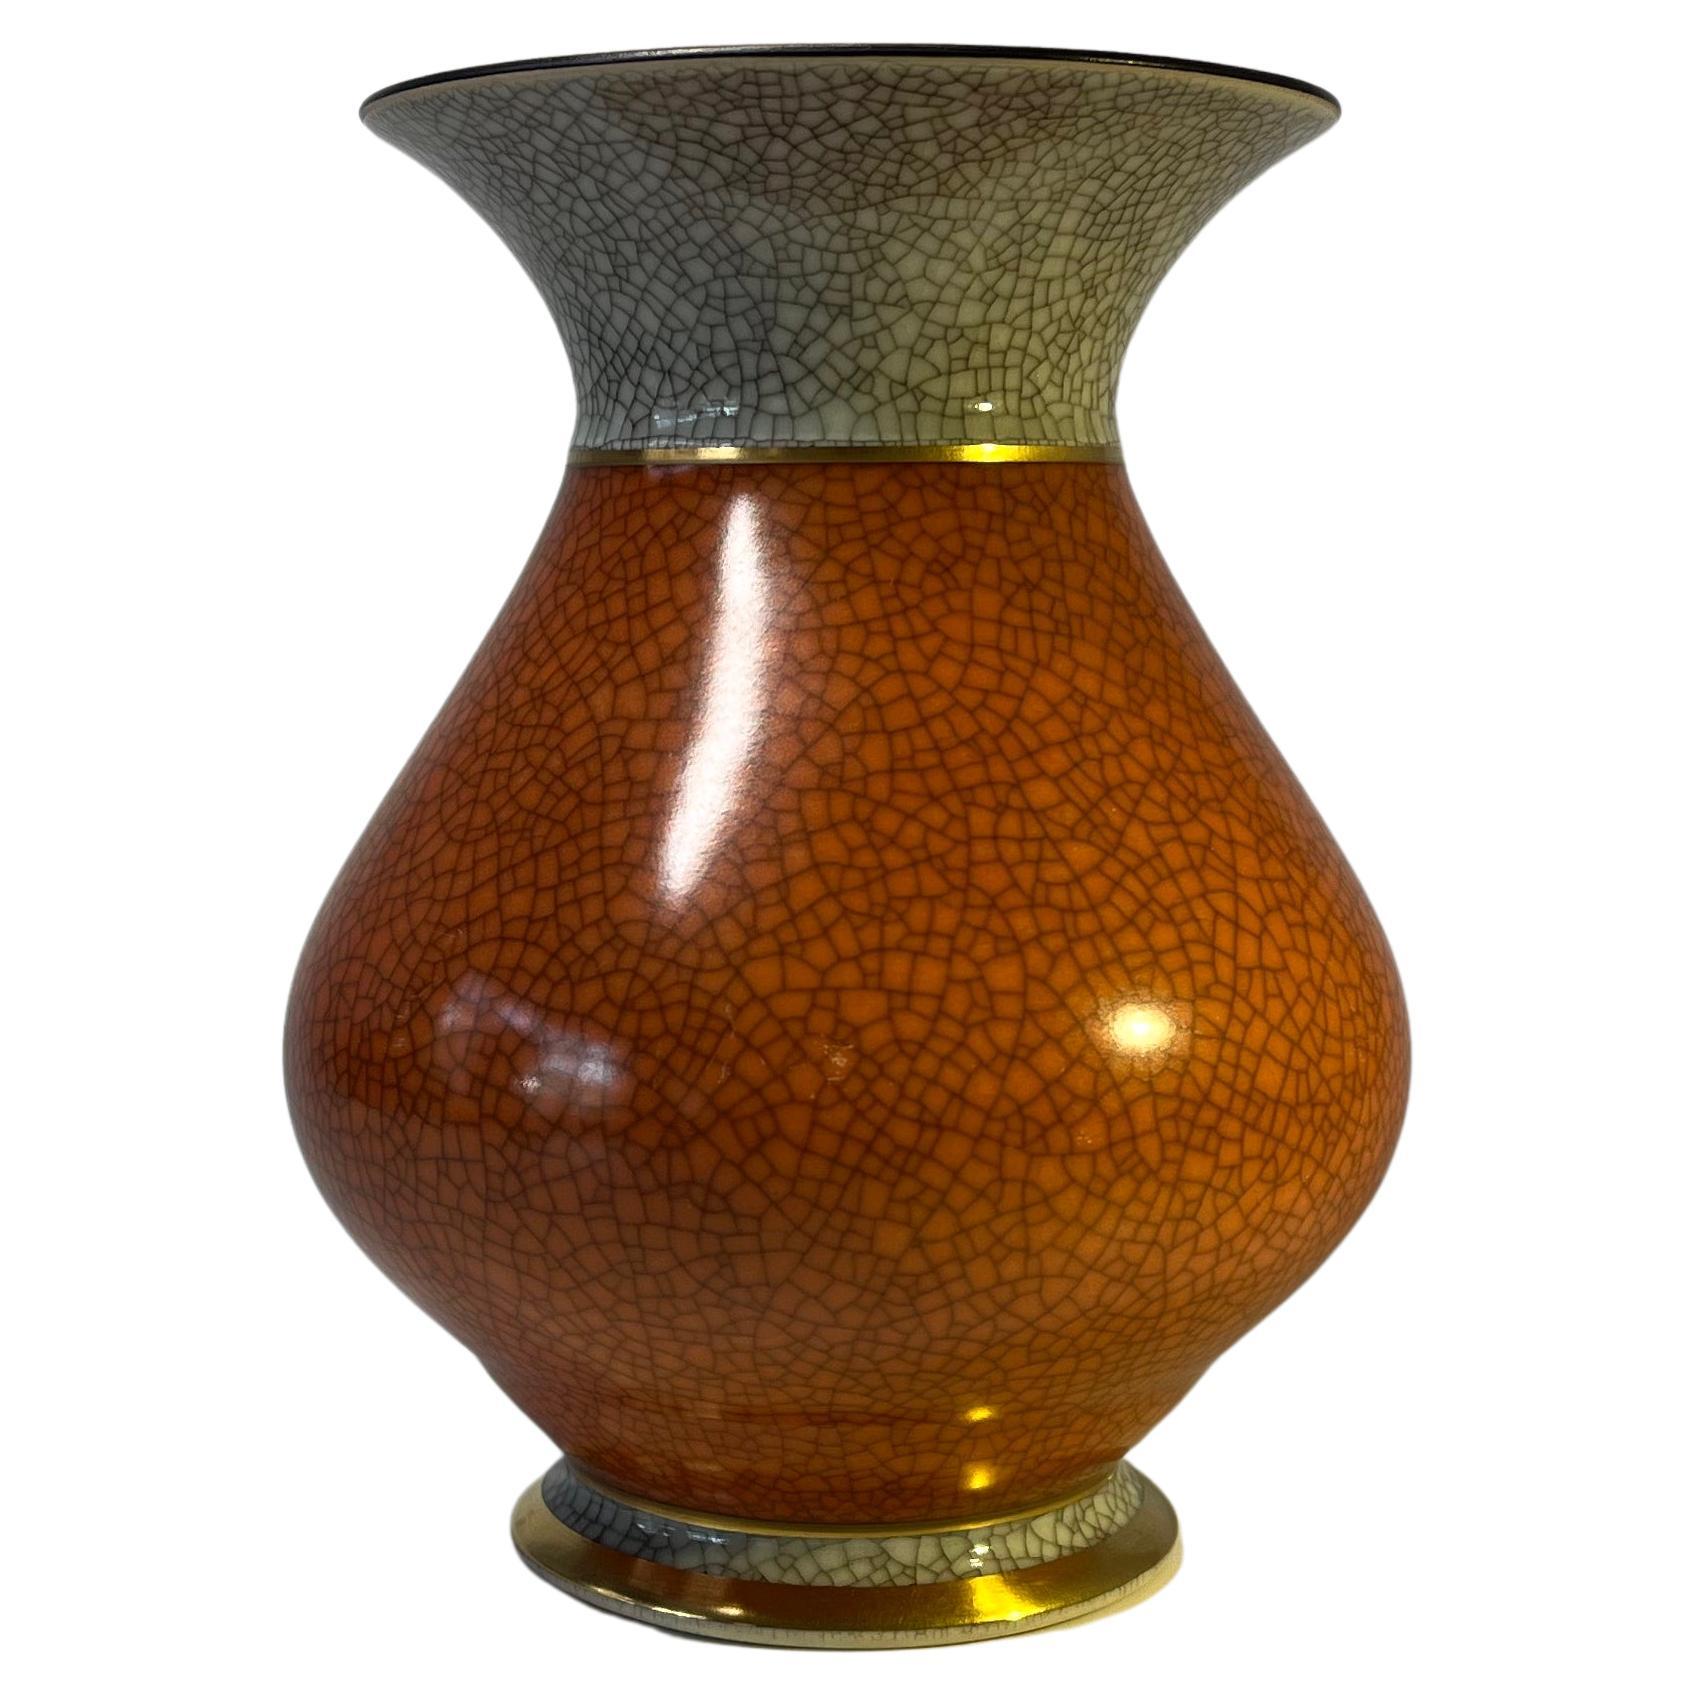 Vase Royal Copenhagen en terre cuite émaillée craquelée, décoration de bandes dorées n° 3060